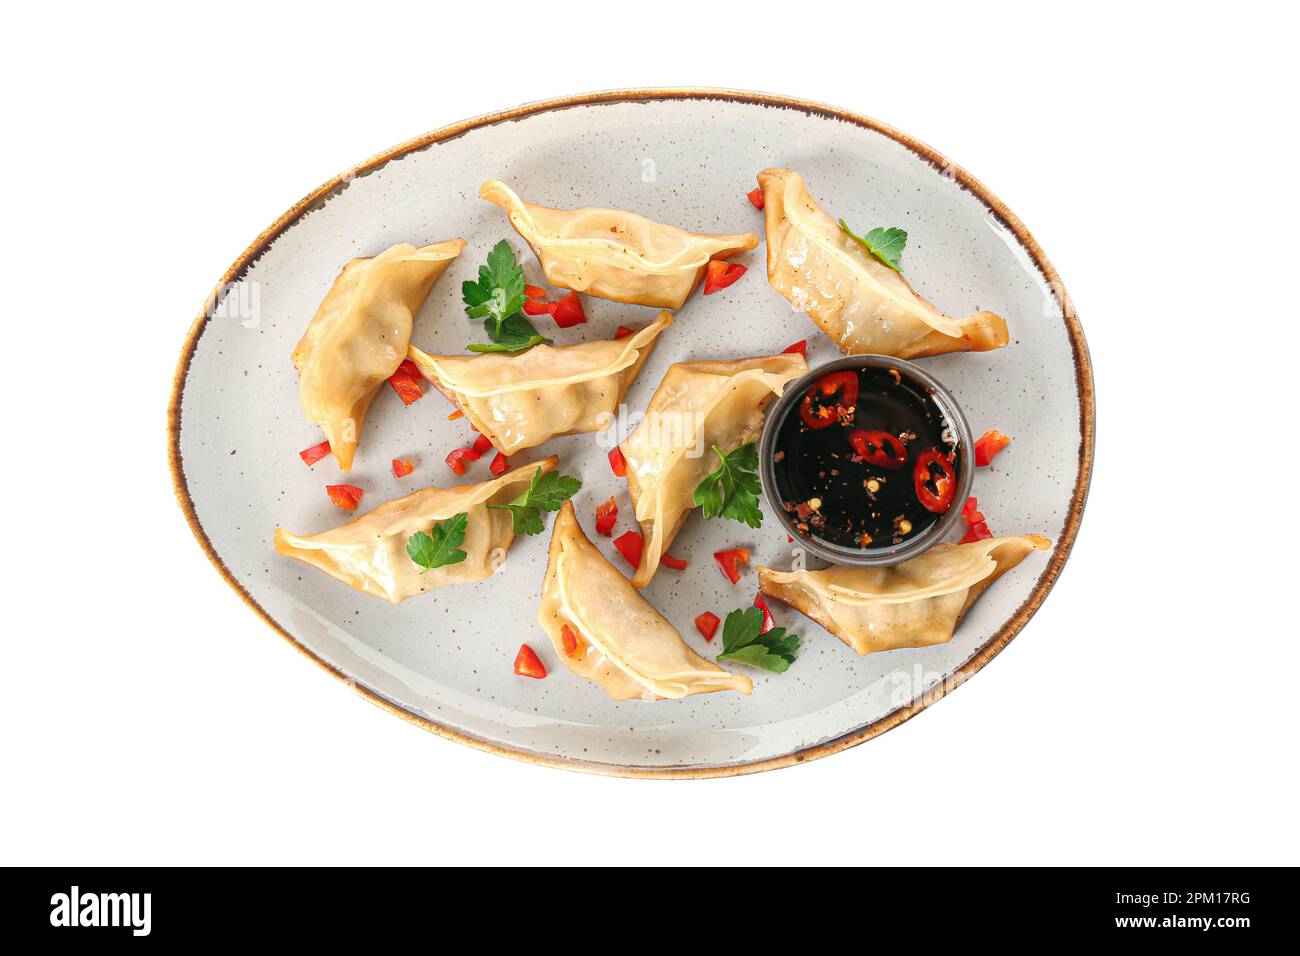 Assiette avec de savoureux jiaozi chinois, persil et sauce sur fond blanc Banque D'Images